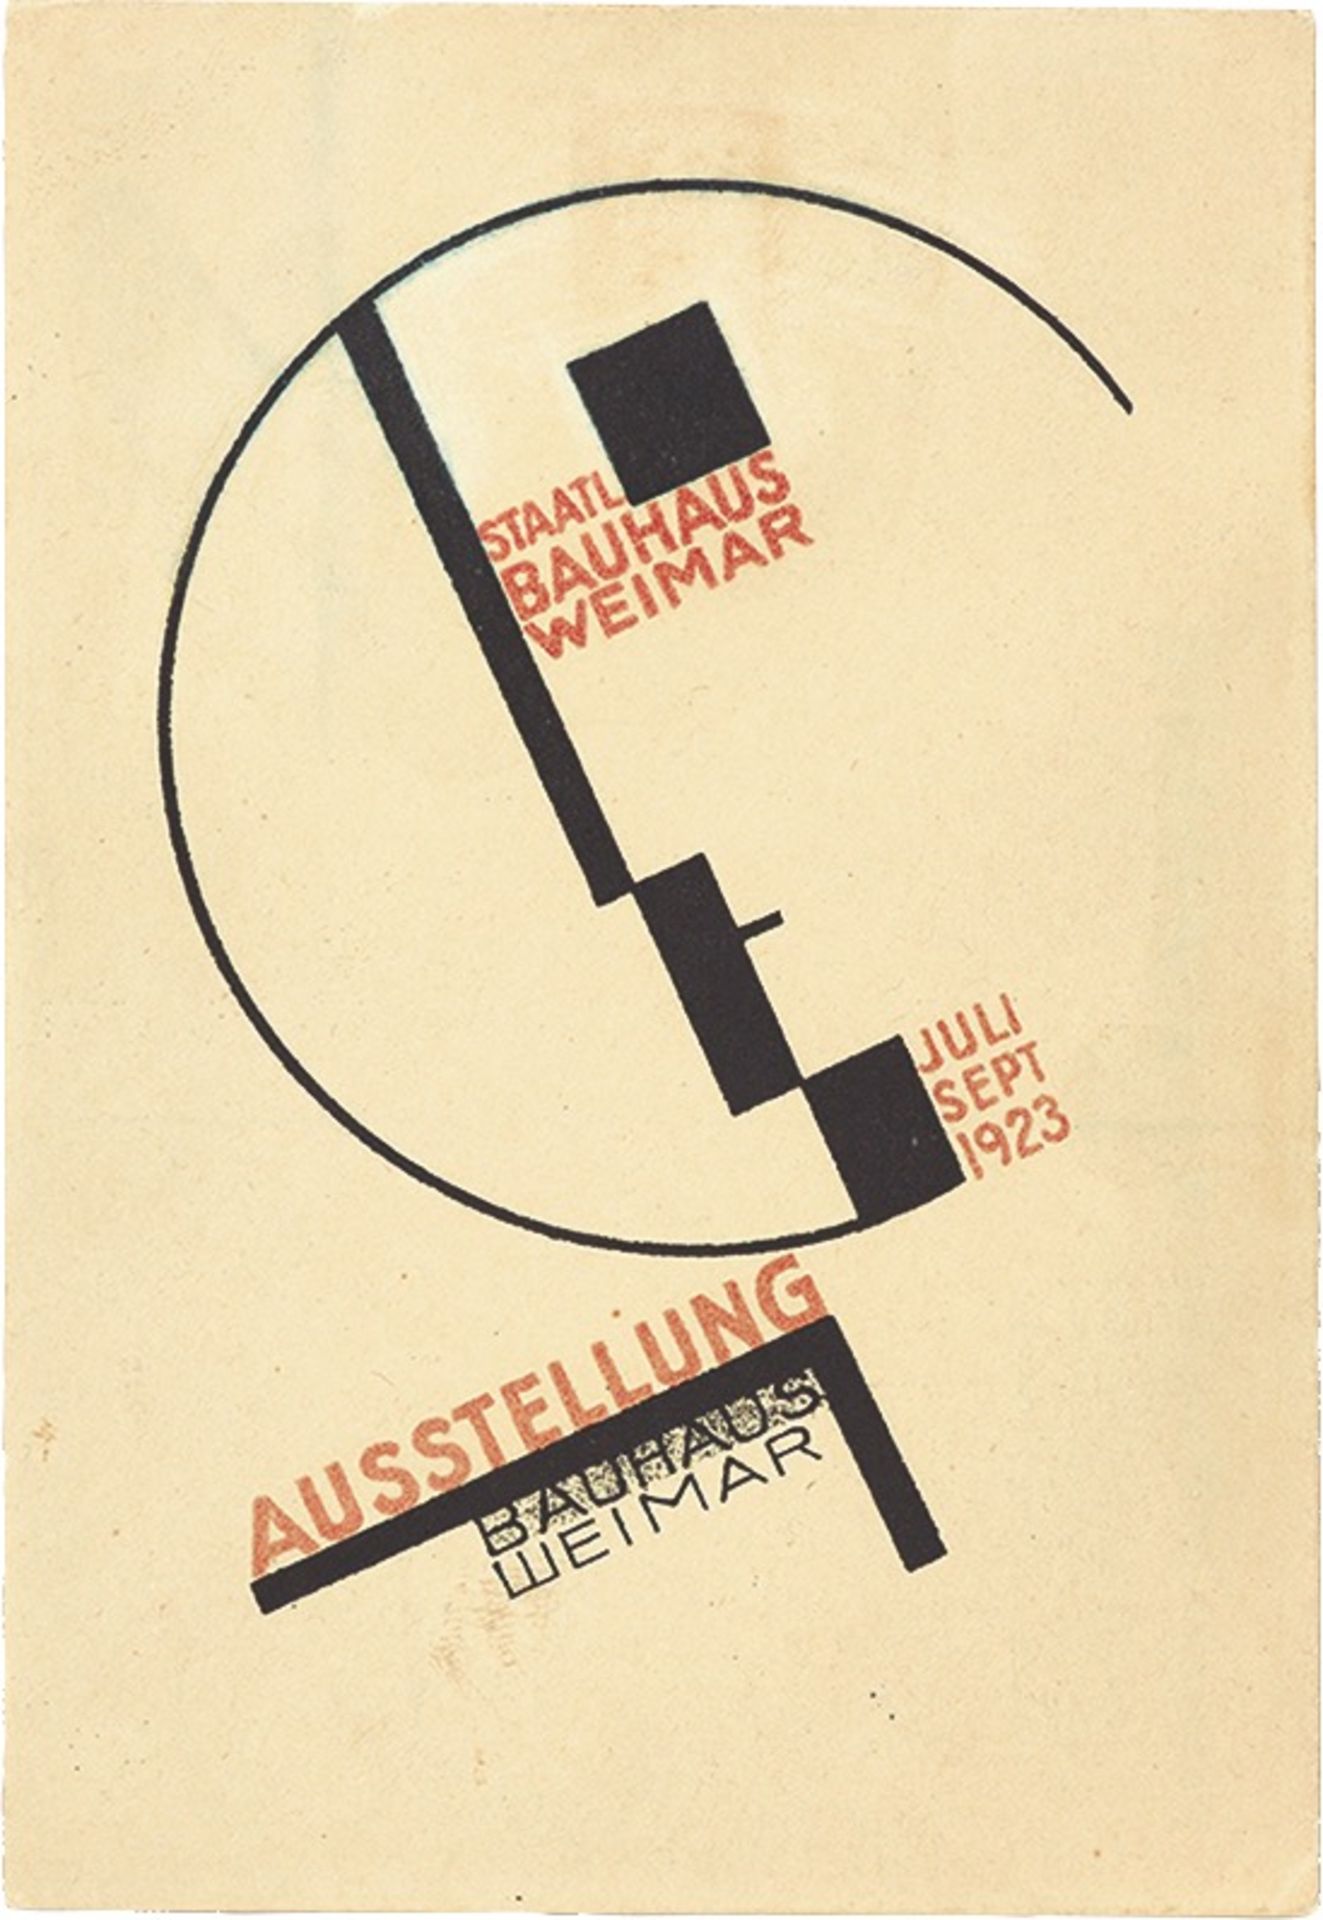 Bauhaus. ”Ausstellung Weimar 1923” – 20 postcards by various Bauhaus artists. 1923 - Image 14 of 20